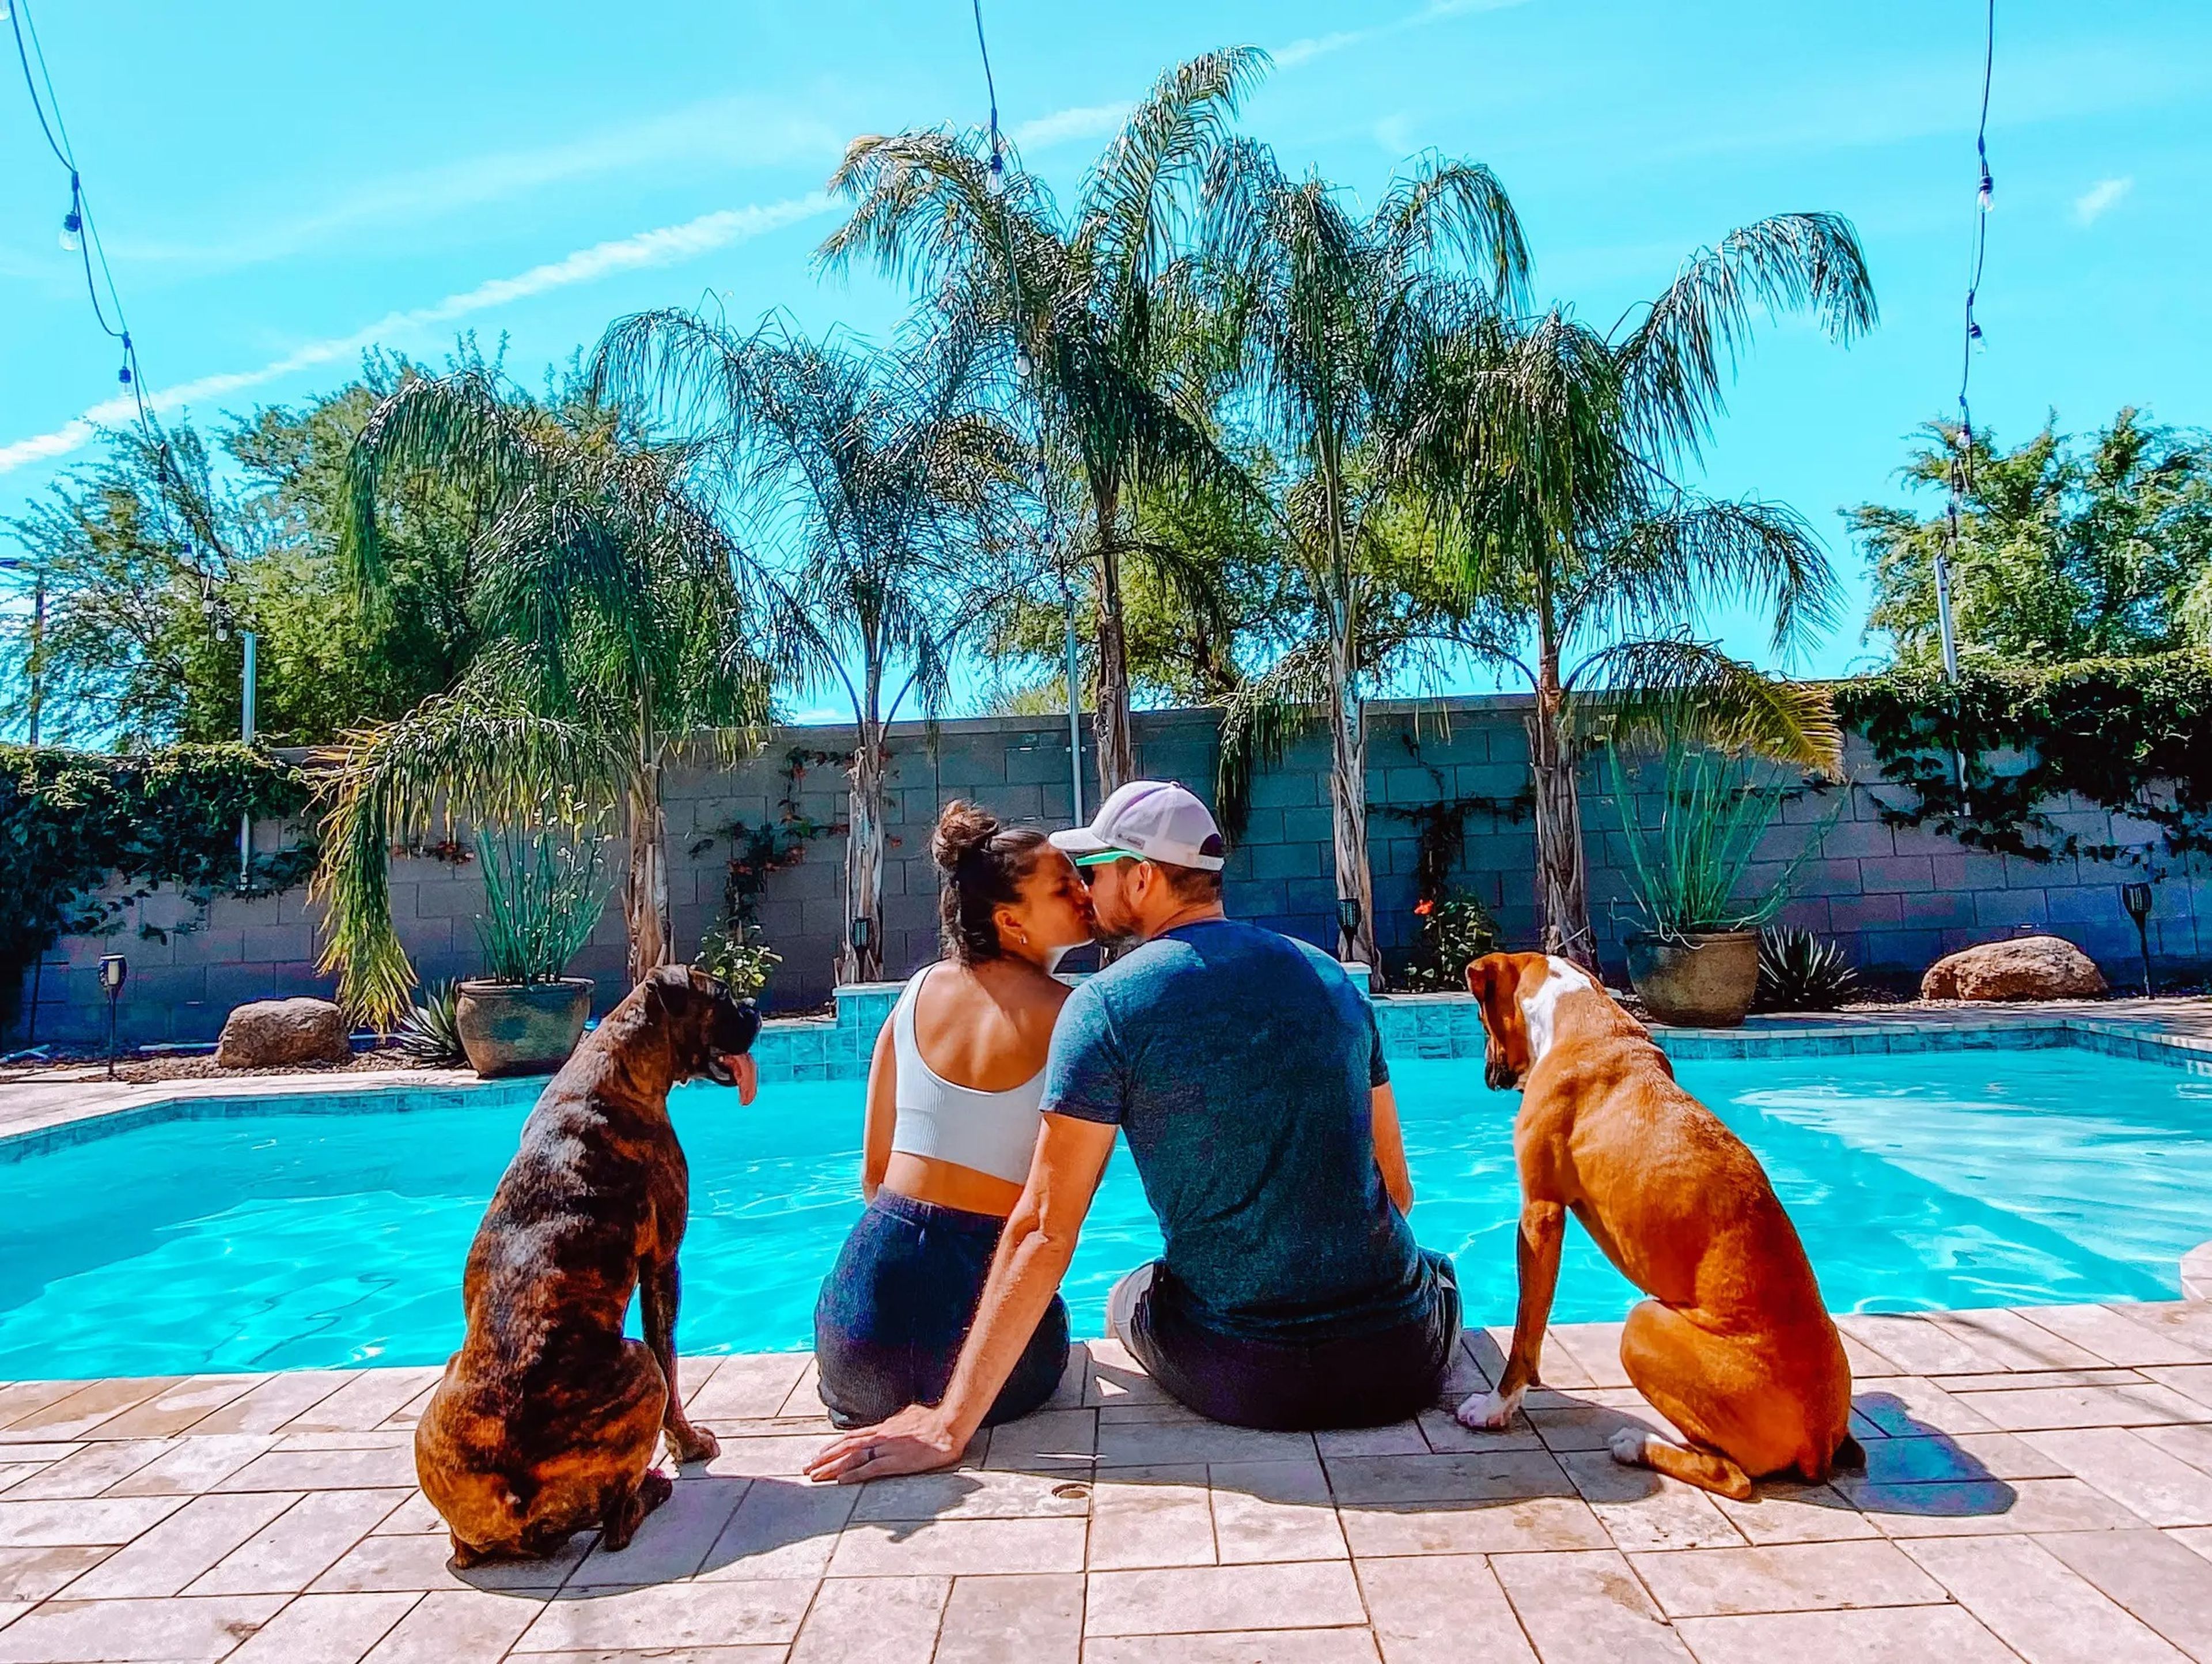 Así vive esta pareja en mansiones gratis como cuidadores de mascotas |  Business Insider España